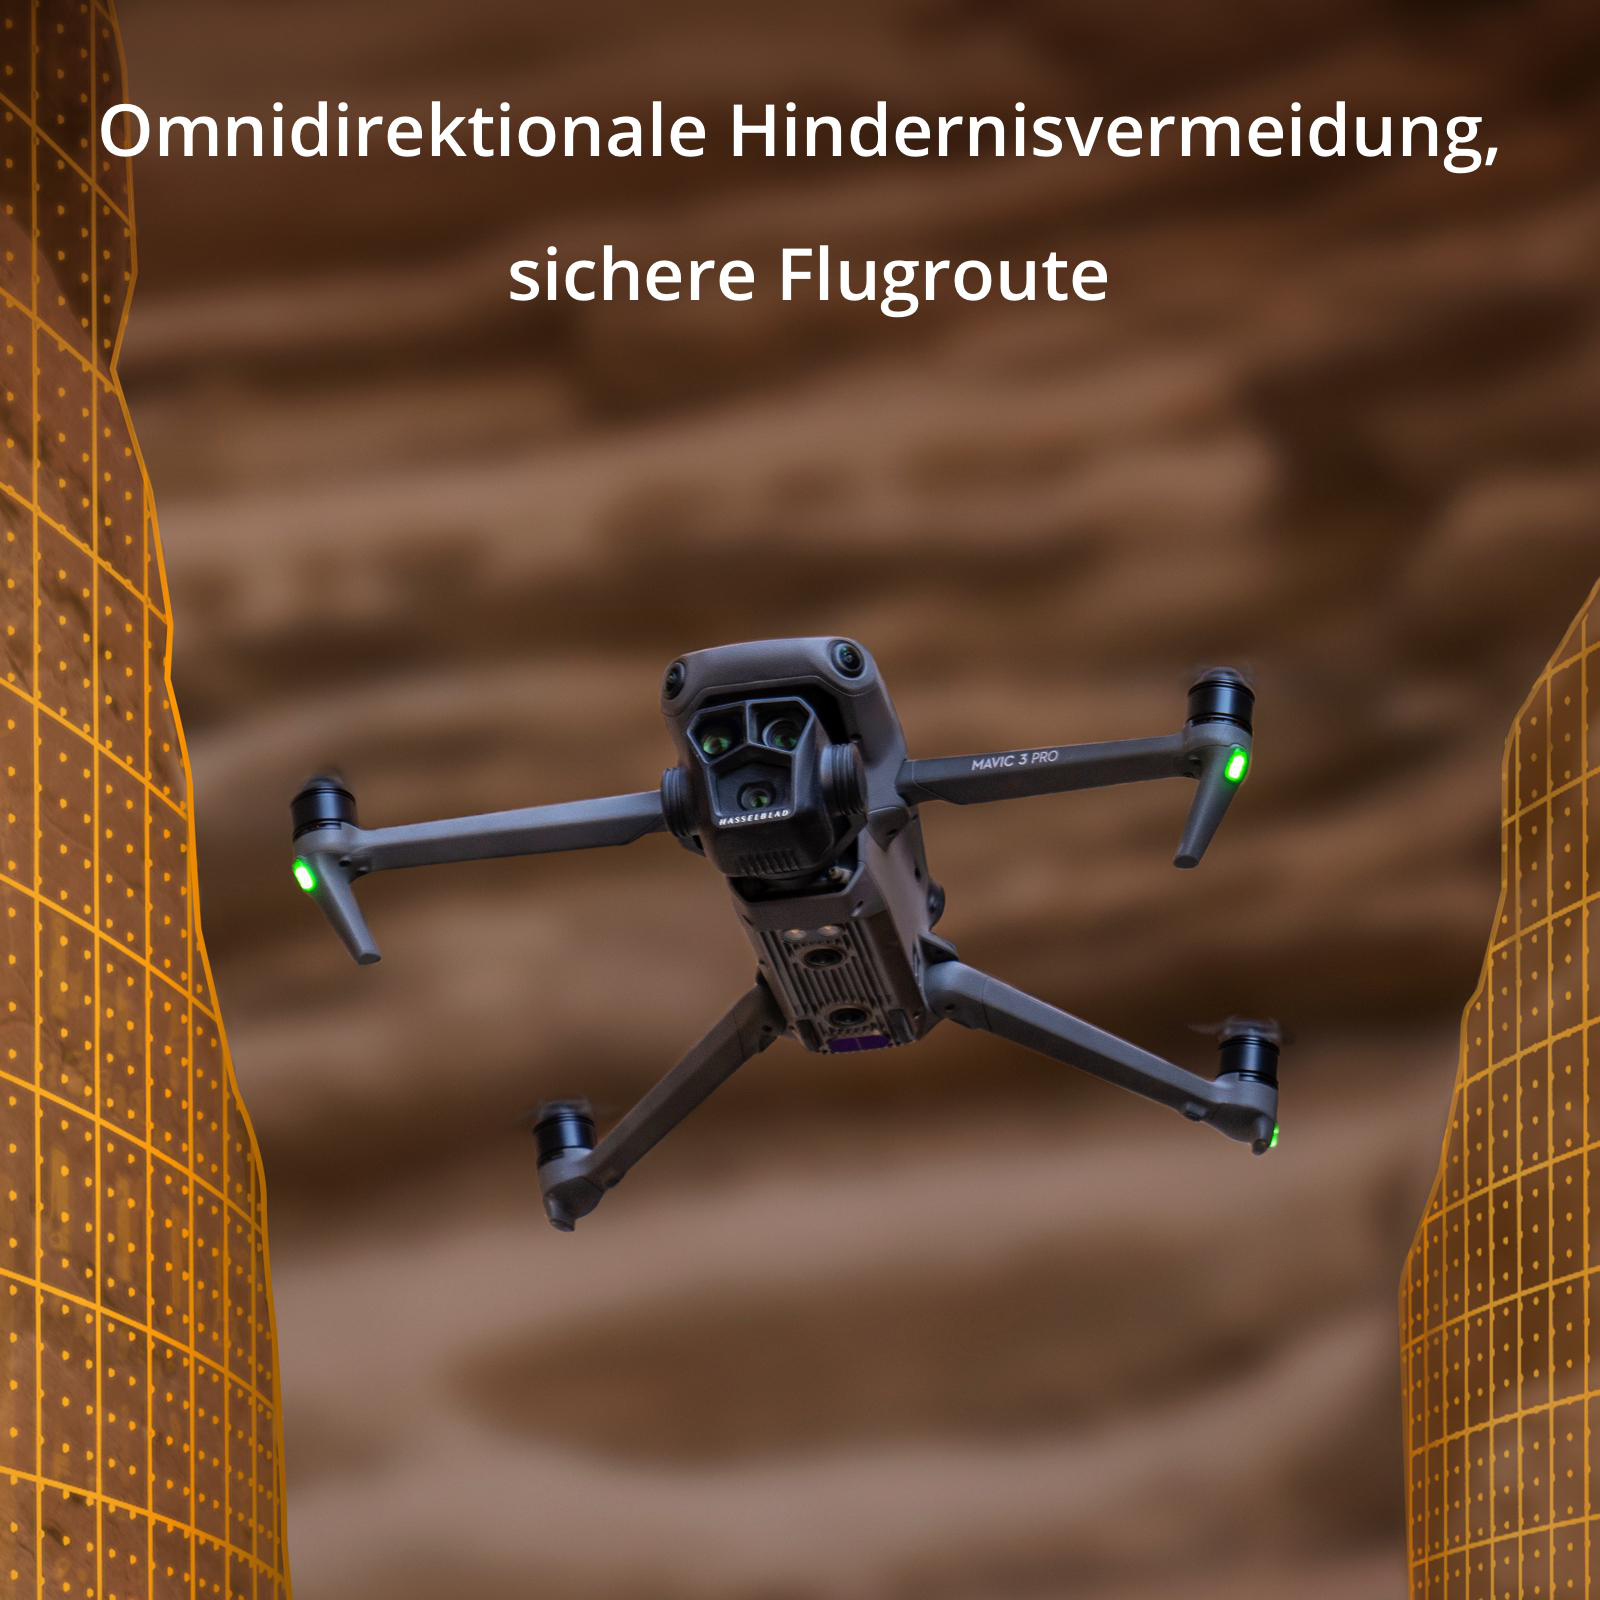 DJI DJI RC Pro) 3 Pro Mavic Grau/Schwarz More Drohne, (DJI Combo Fly